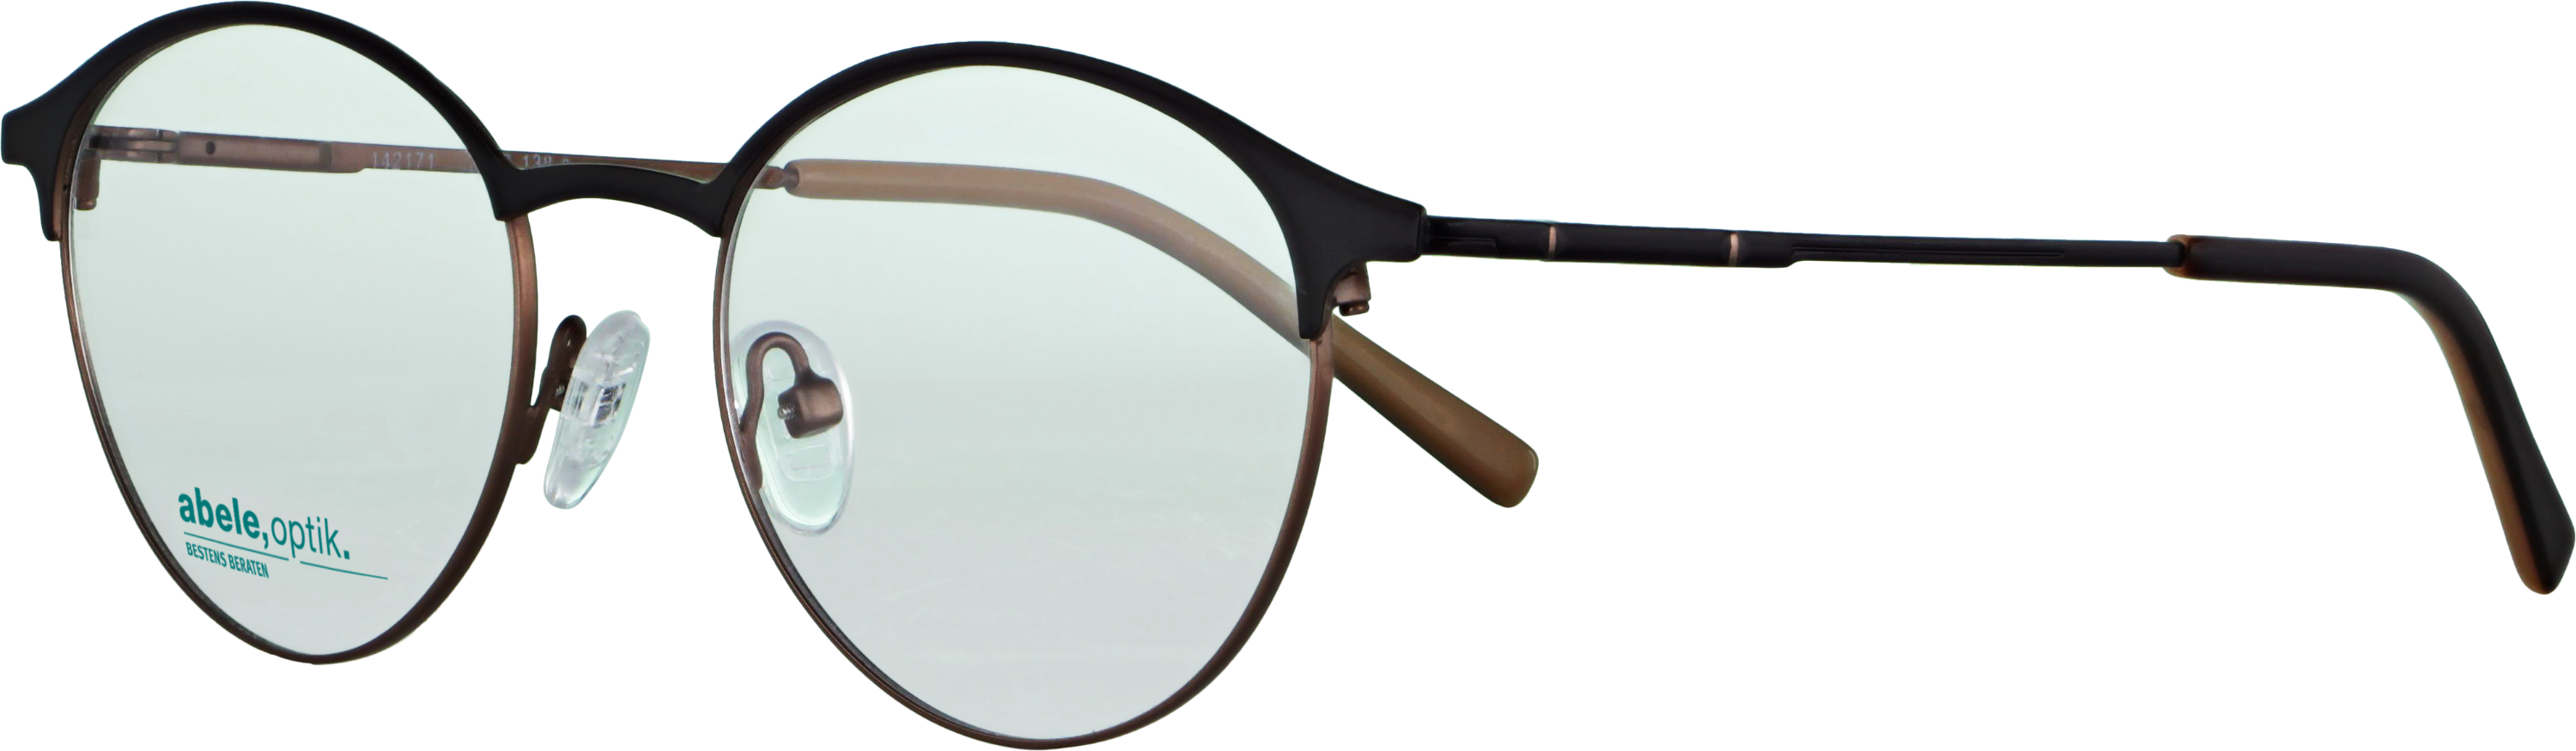 Das Bild zeigt die Korrektionsbrille 142171 von der Marke Abele Optik in schwarz matt / braun.